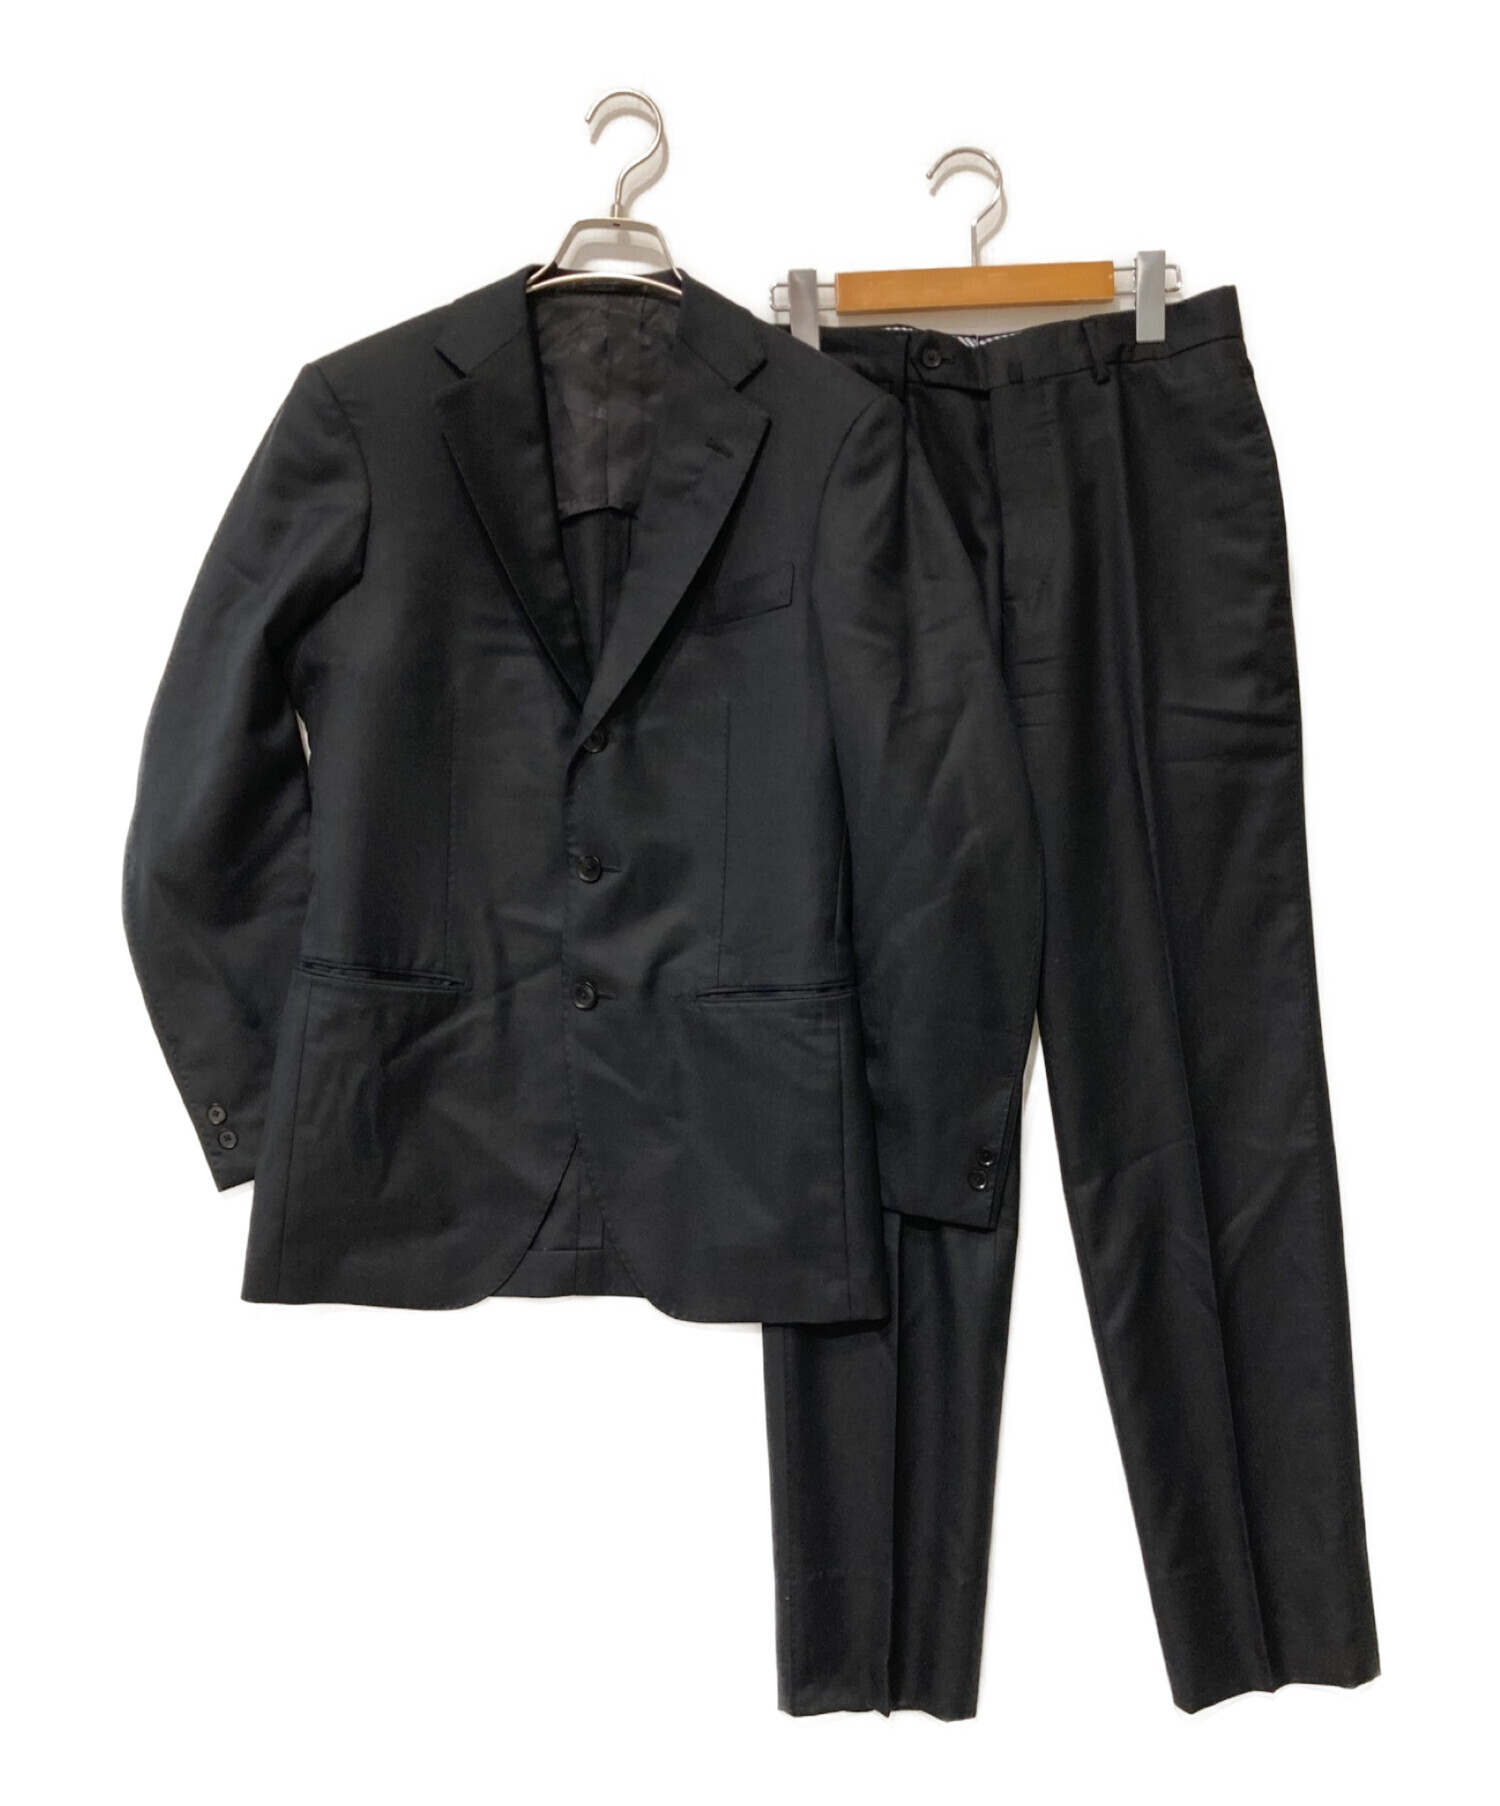 TOMORROW LAND PILGRIM (トゥモローランド ピルグリム) ウールシルクセットアップスーツ ブラック サイズ:44